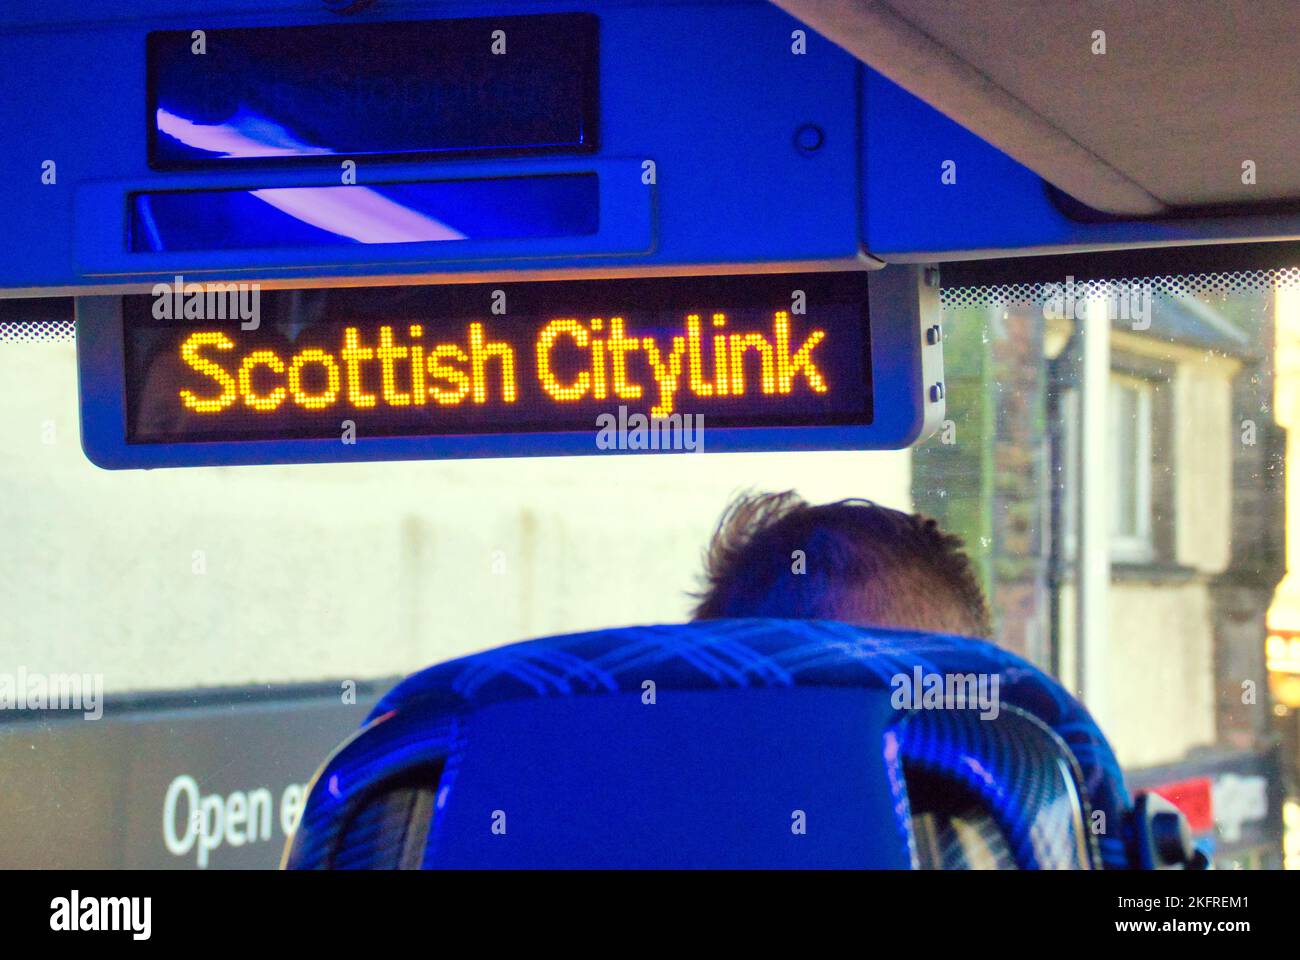 Panneau d'arrêt de bus Scottish citylink allumé Banque D'Images